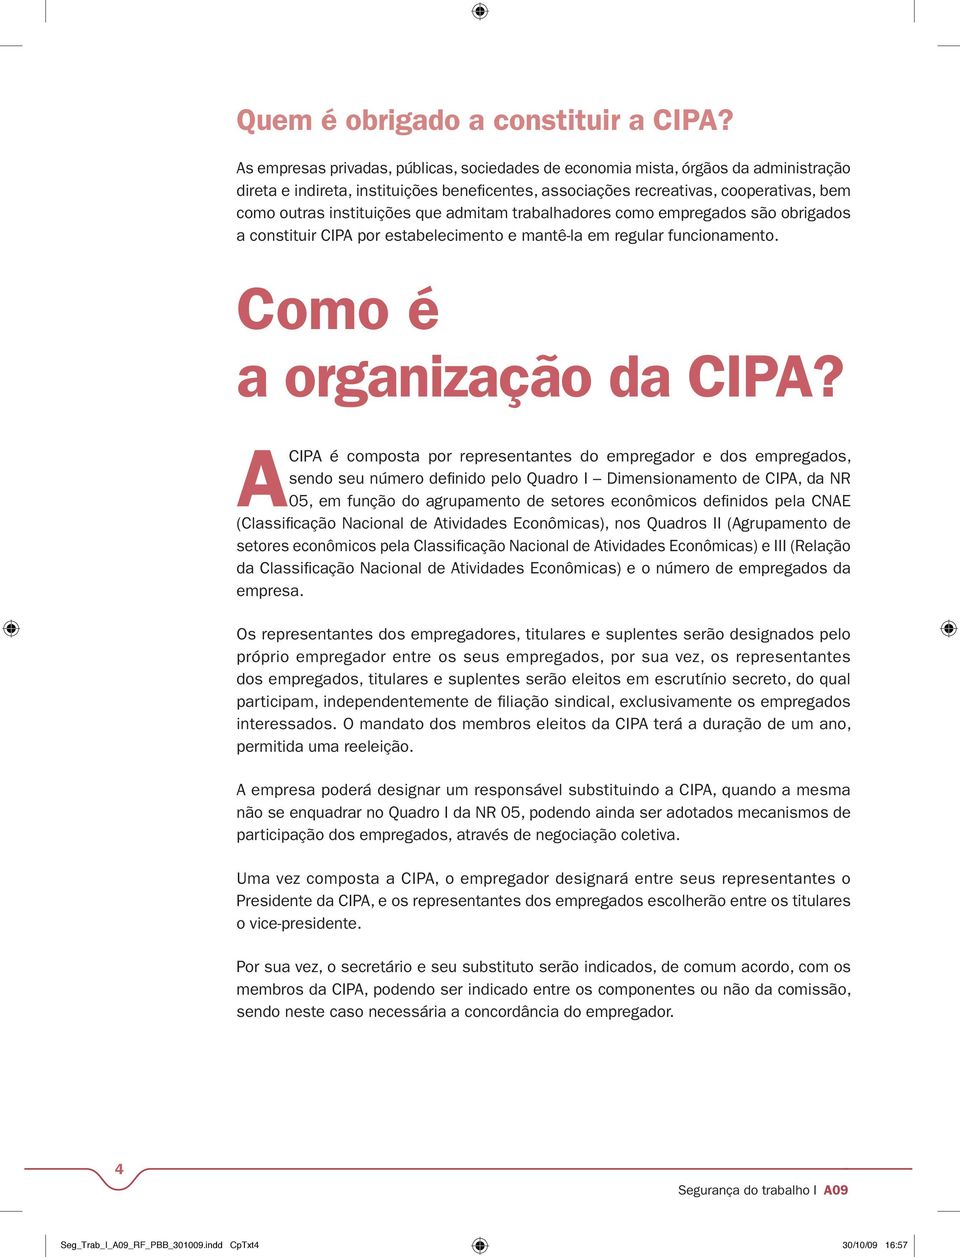 que admitam trabalhadores como empregados são obrigados a constituir CIPA por estabelecimento e mantê-la em regular funcionamento. Como é a organização da CIPA?